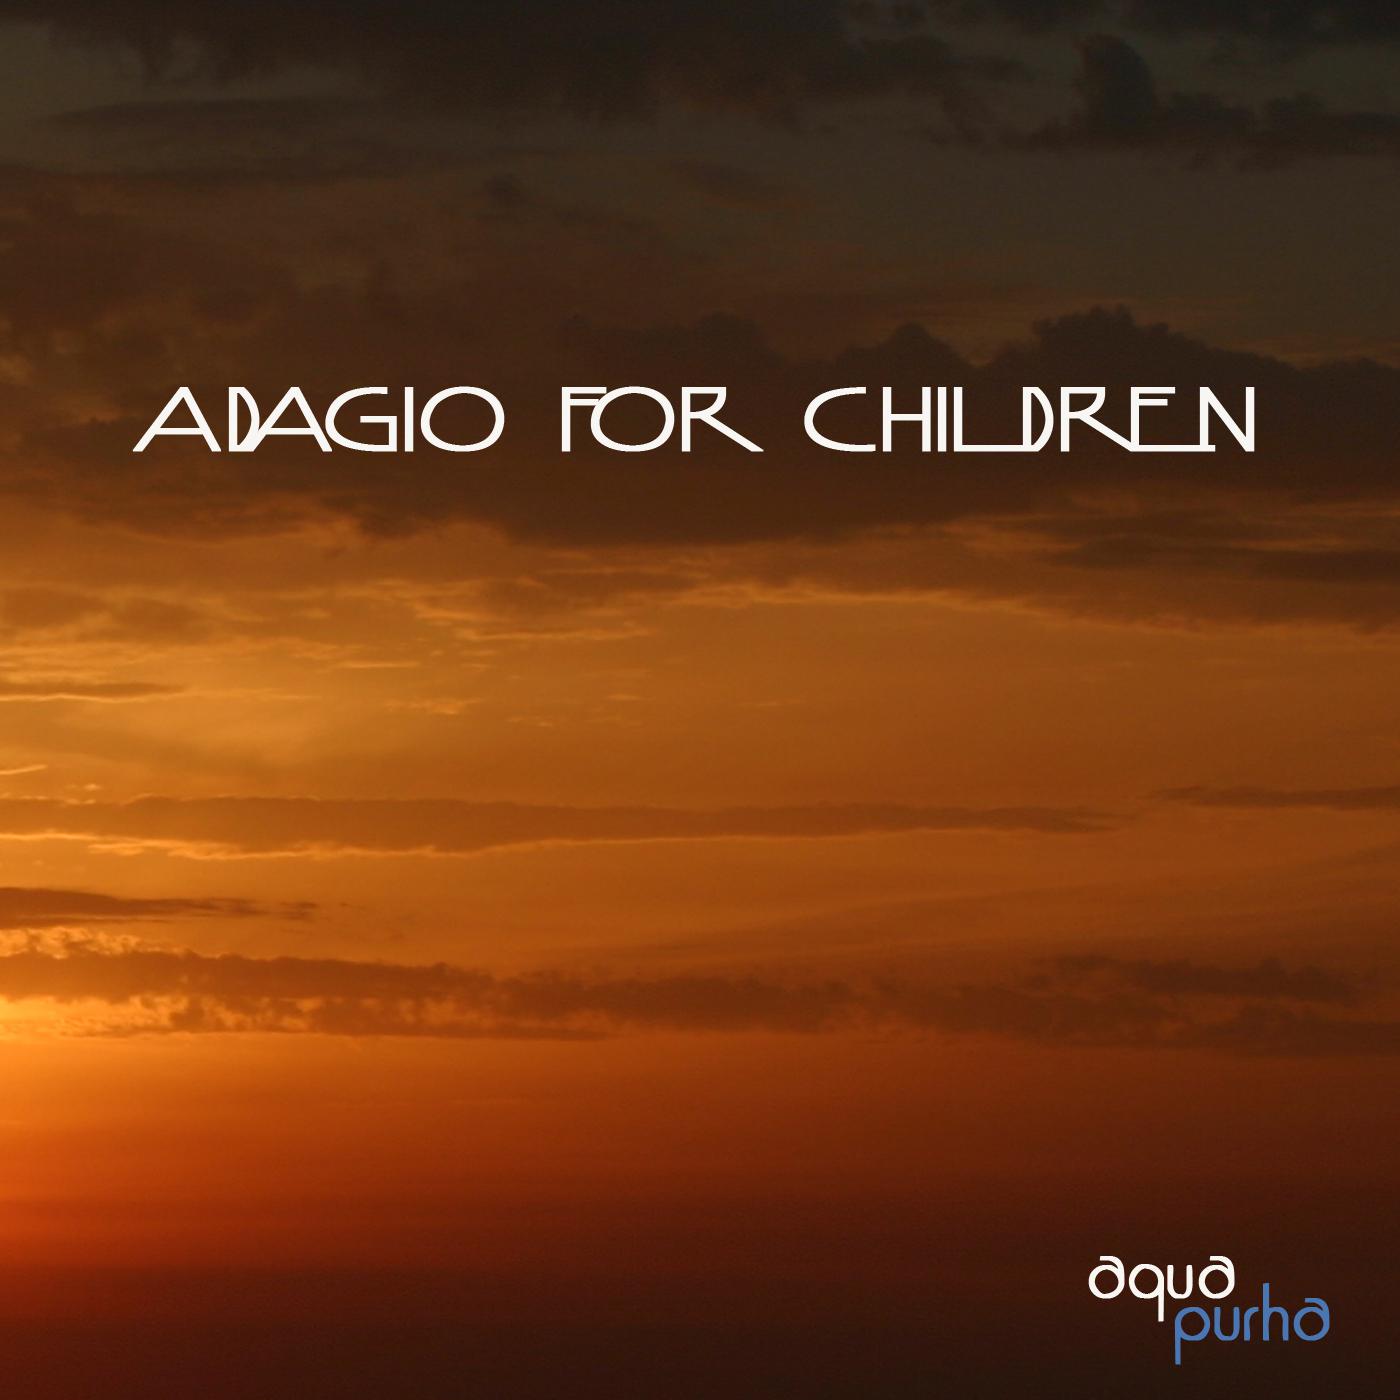 Adagio for Children